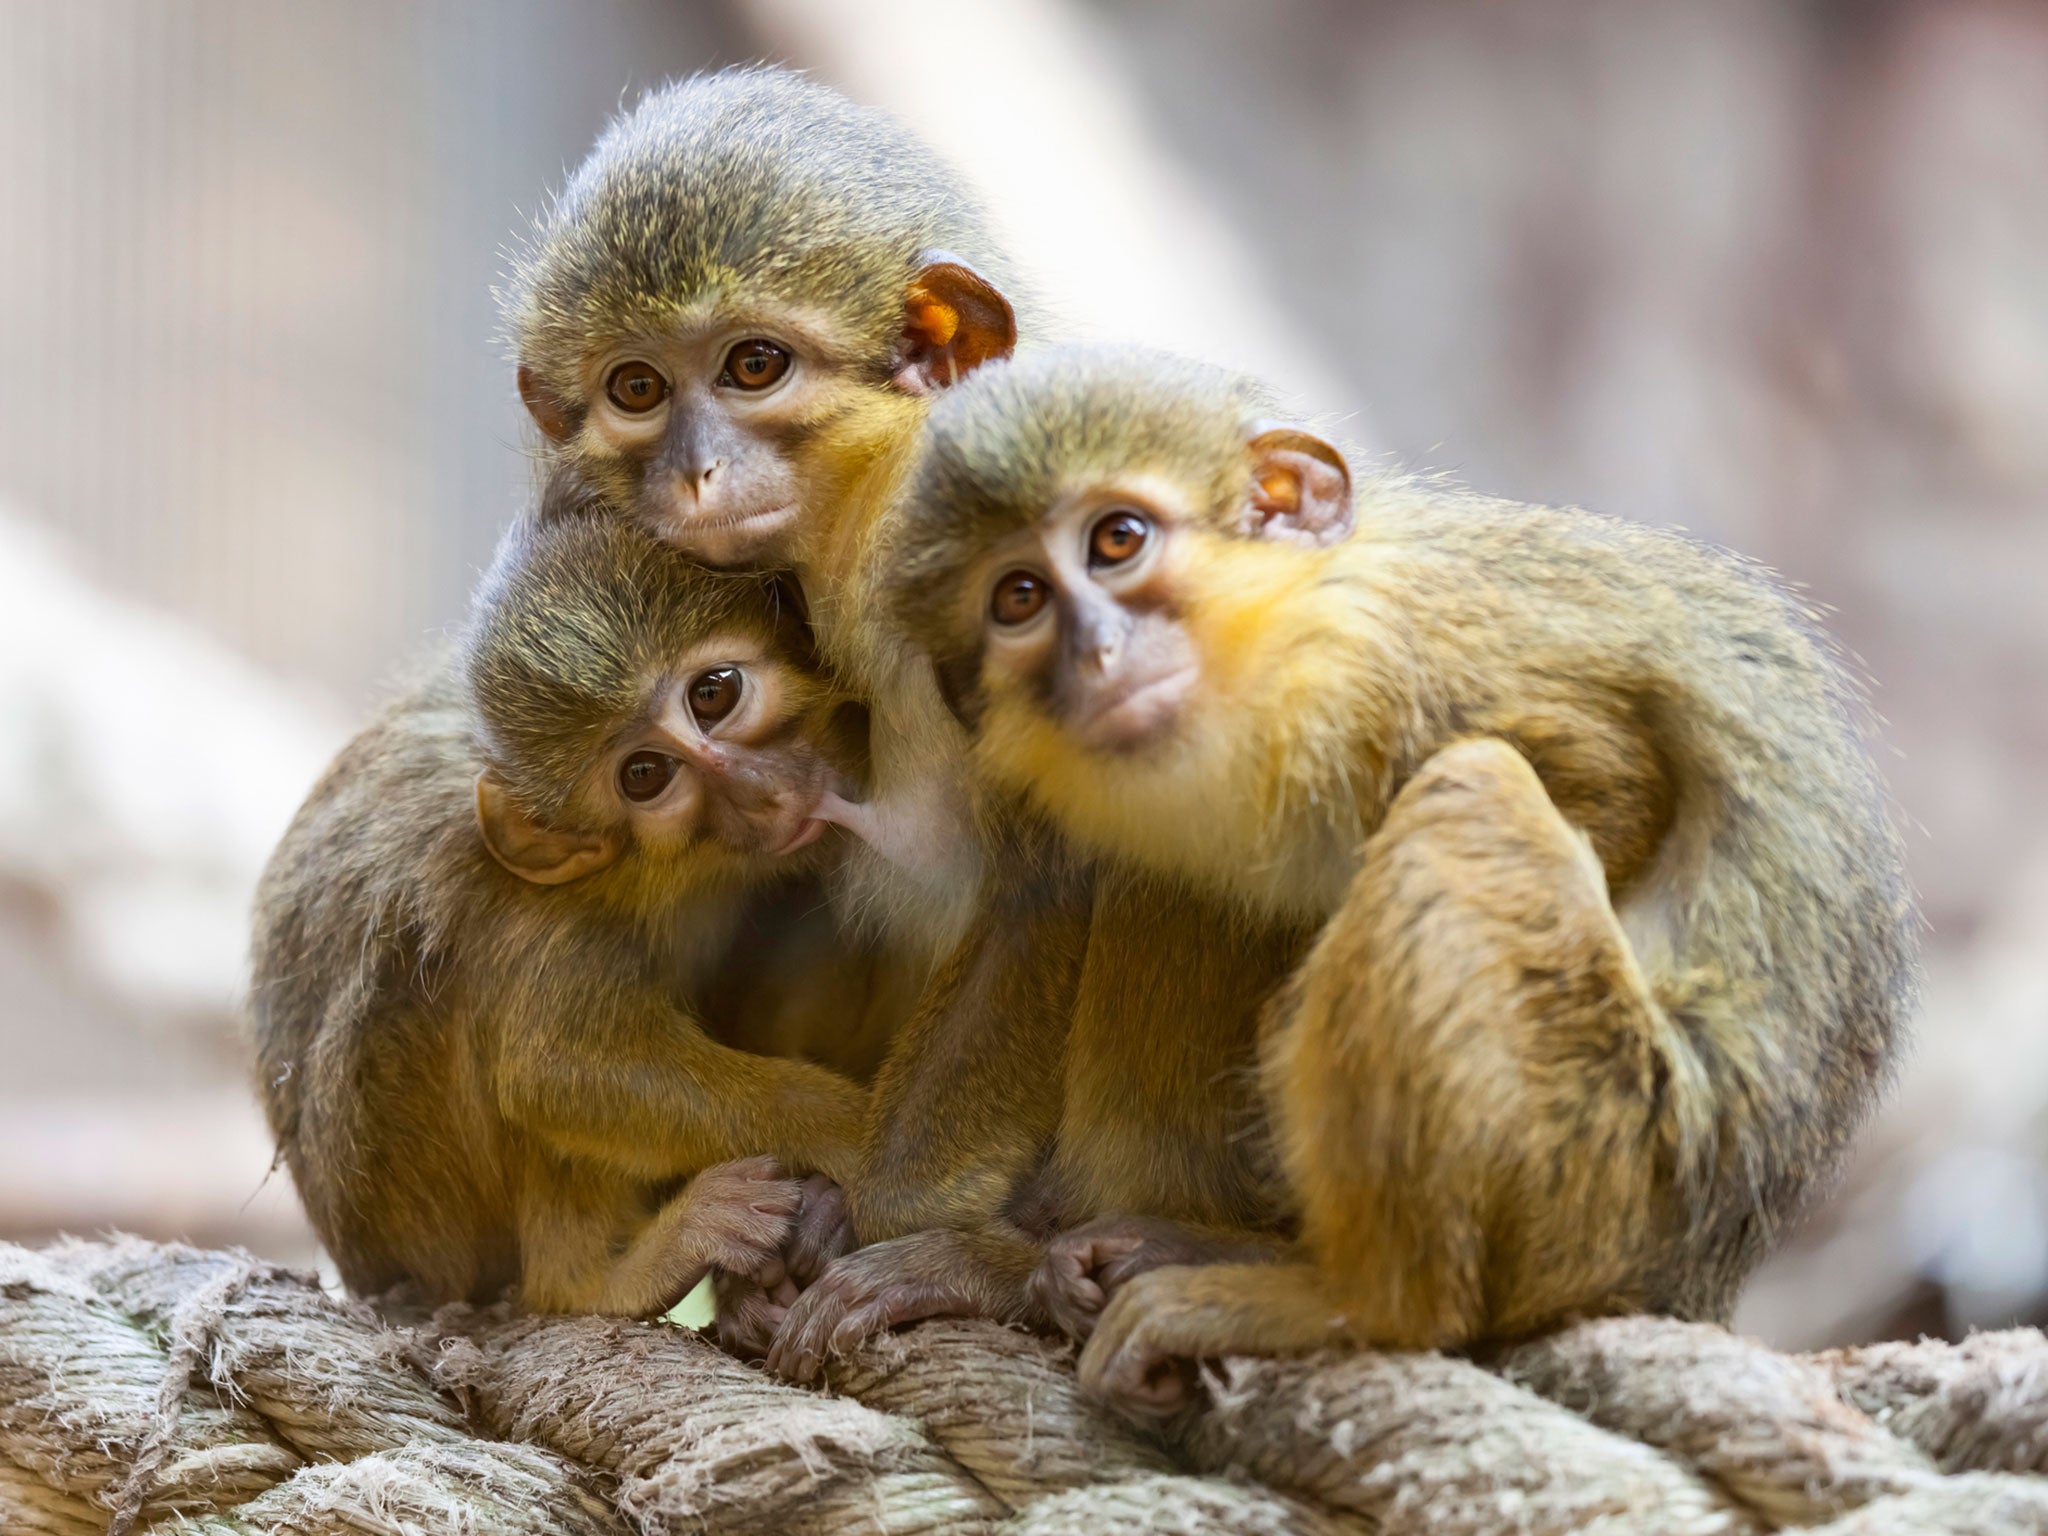 Những chú khỉ con vô cùng đáng yêu và tinh nghịch đang chờ đón bạn! Hãy xem chúng cùng nhảy múa, leo trèo và đùa nghịch, truyền cho bạn những giây phút thư giãn và vui nhộn.